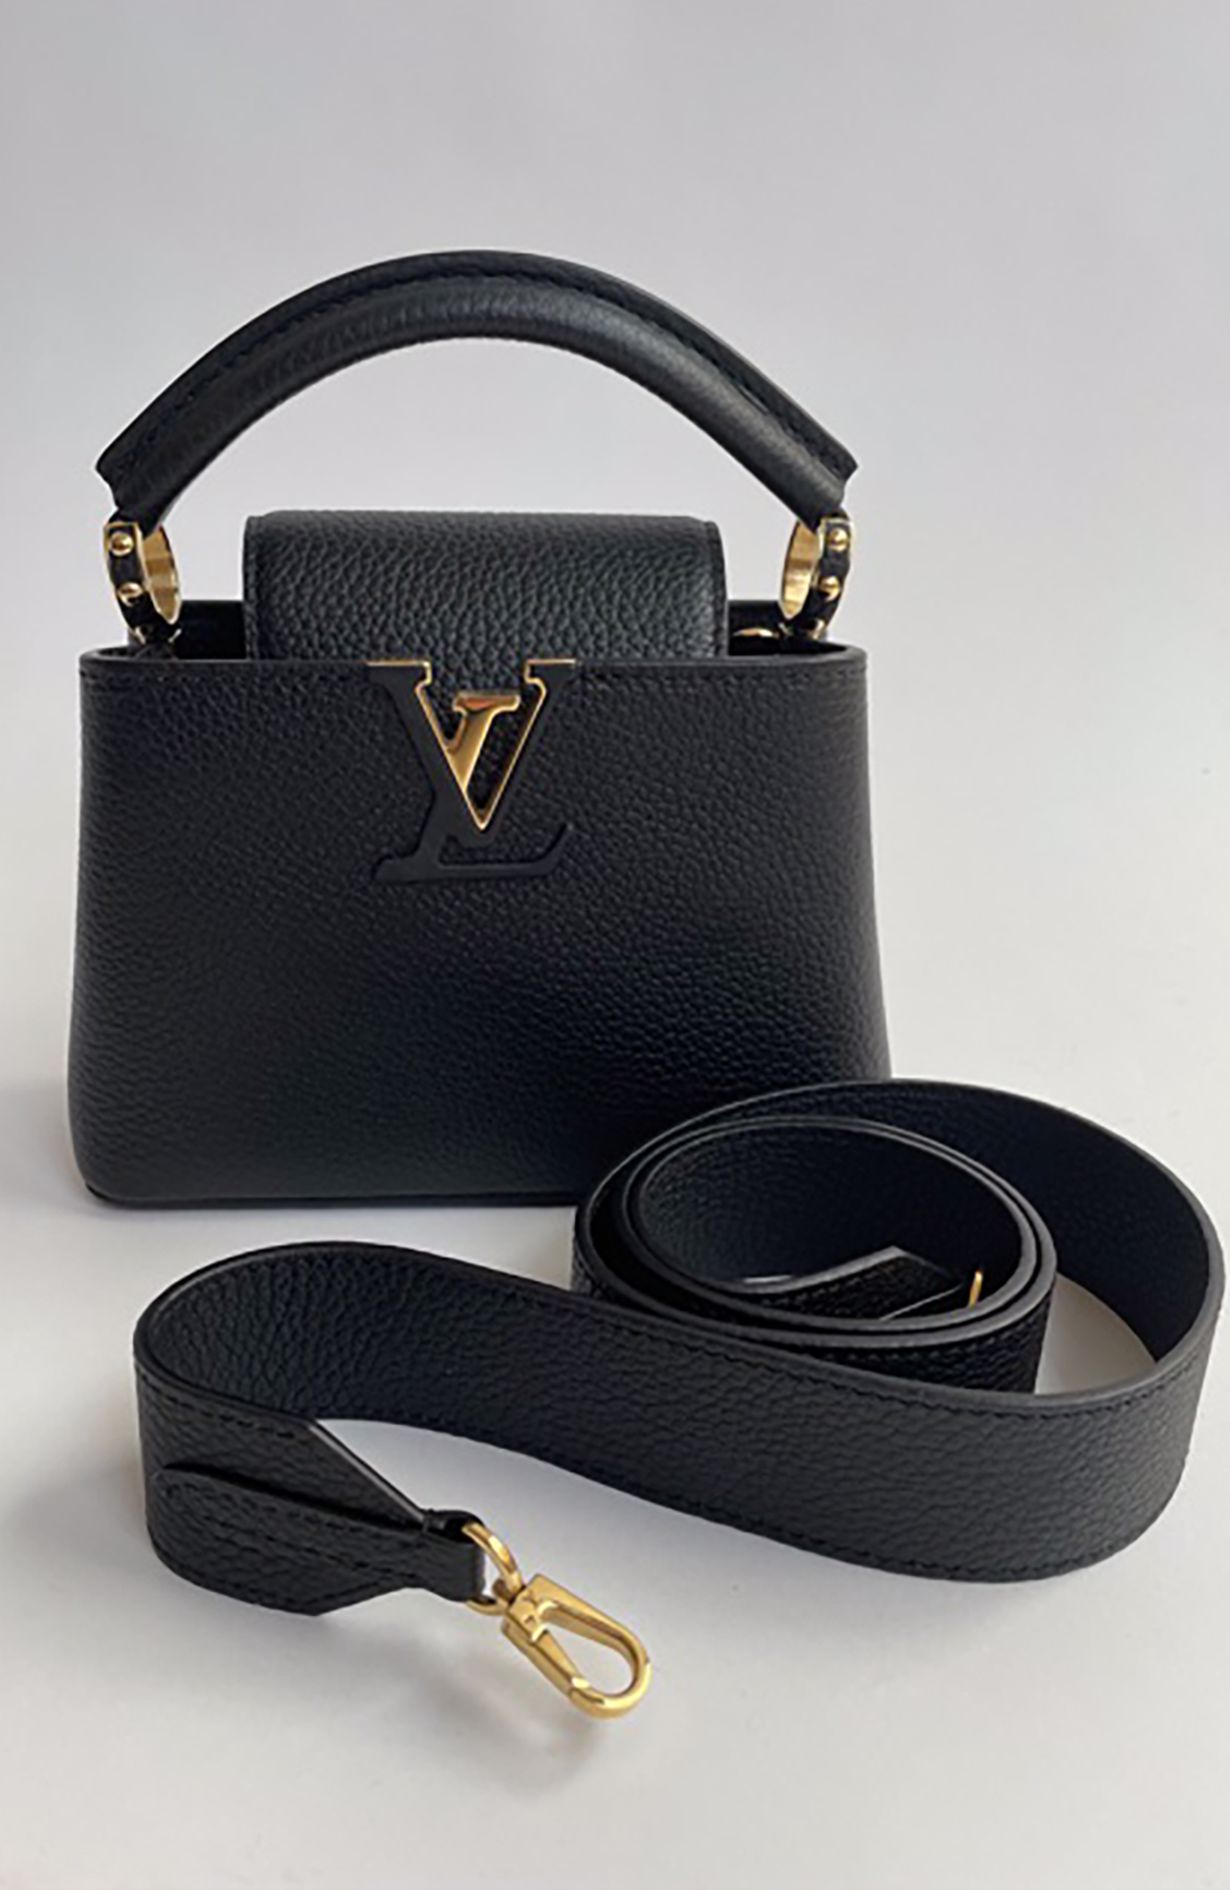 Louis Vuitton Capucines BB Metallic Grey Top Handle Handbag